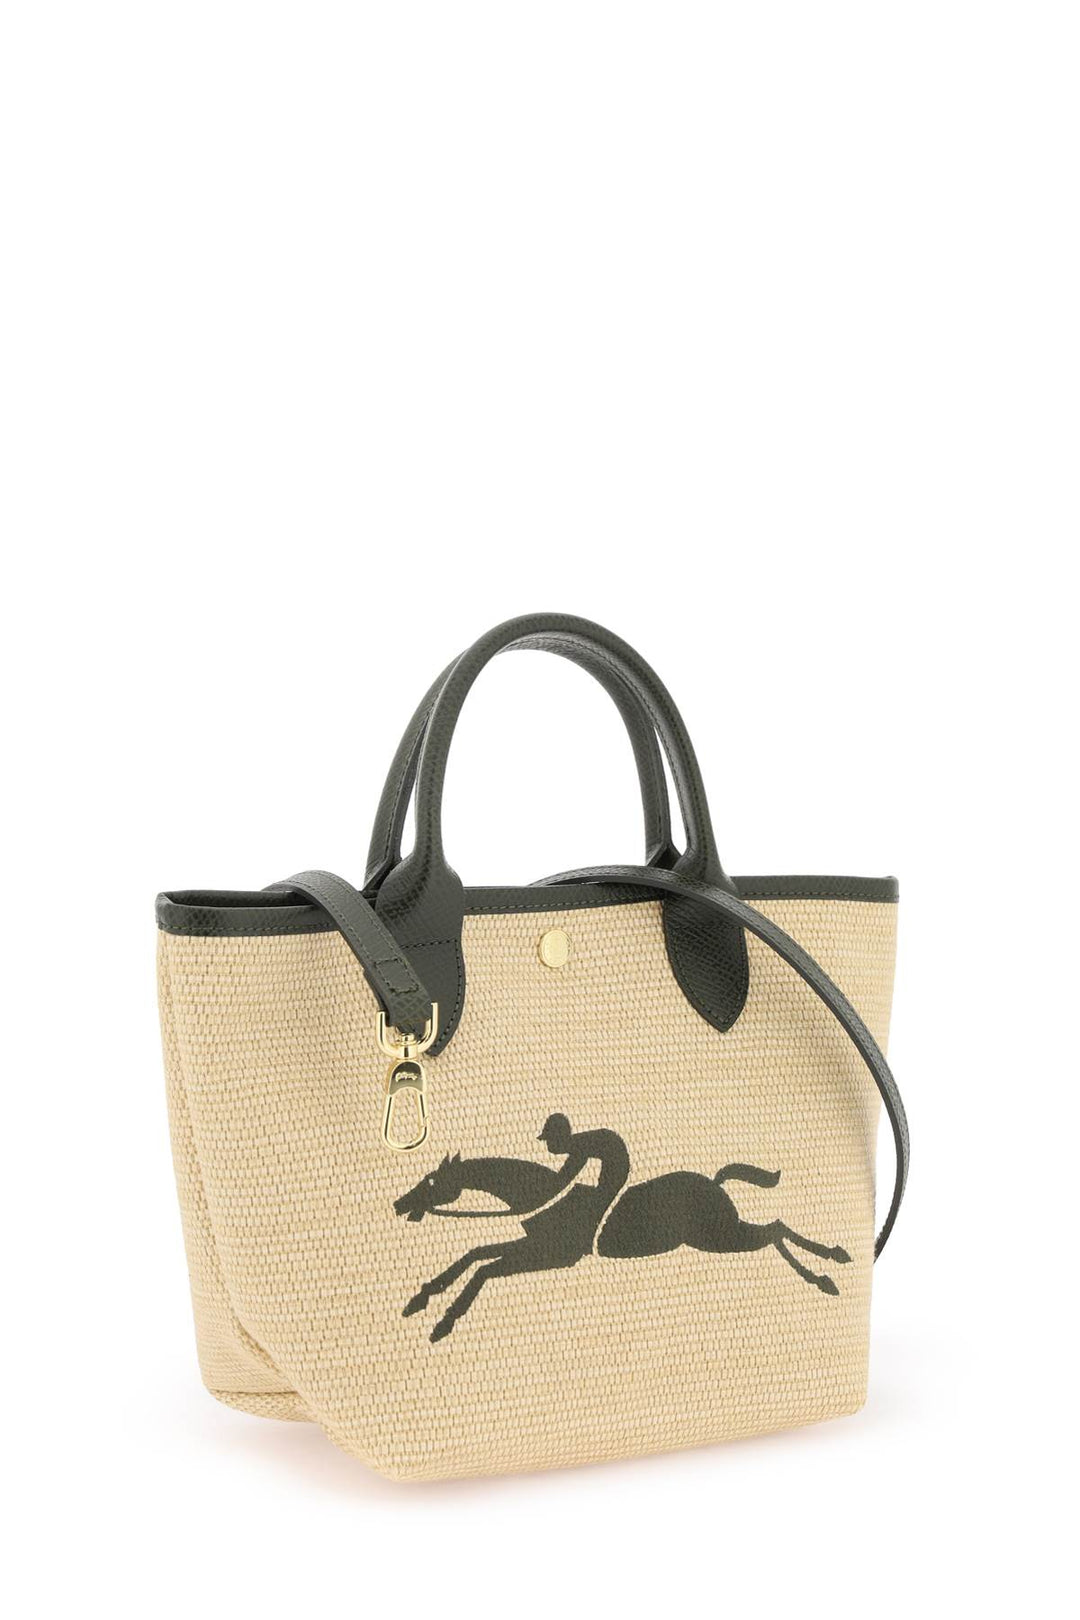 Longchamp Le Panier Pliage S Handbag   Beige